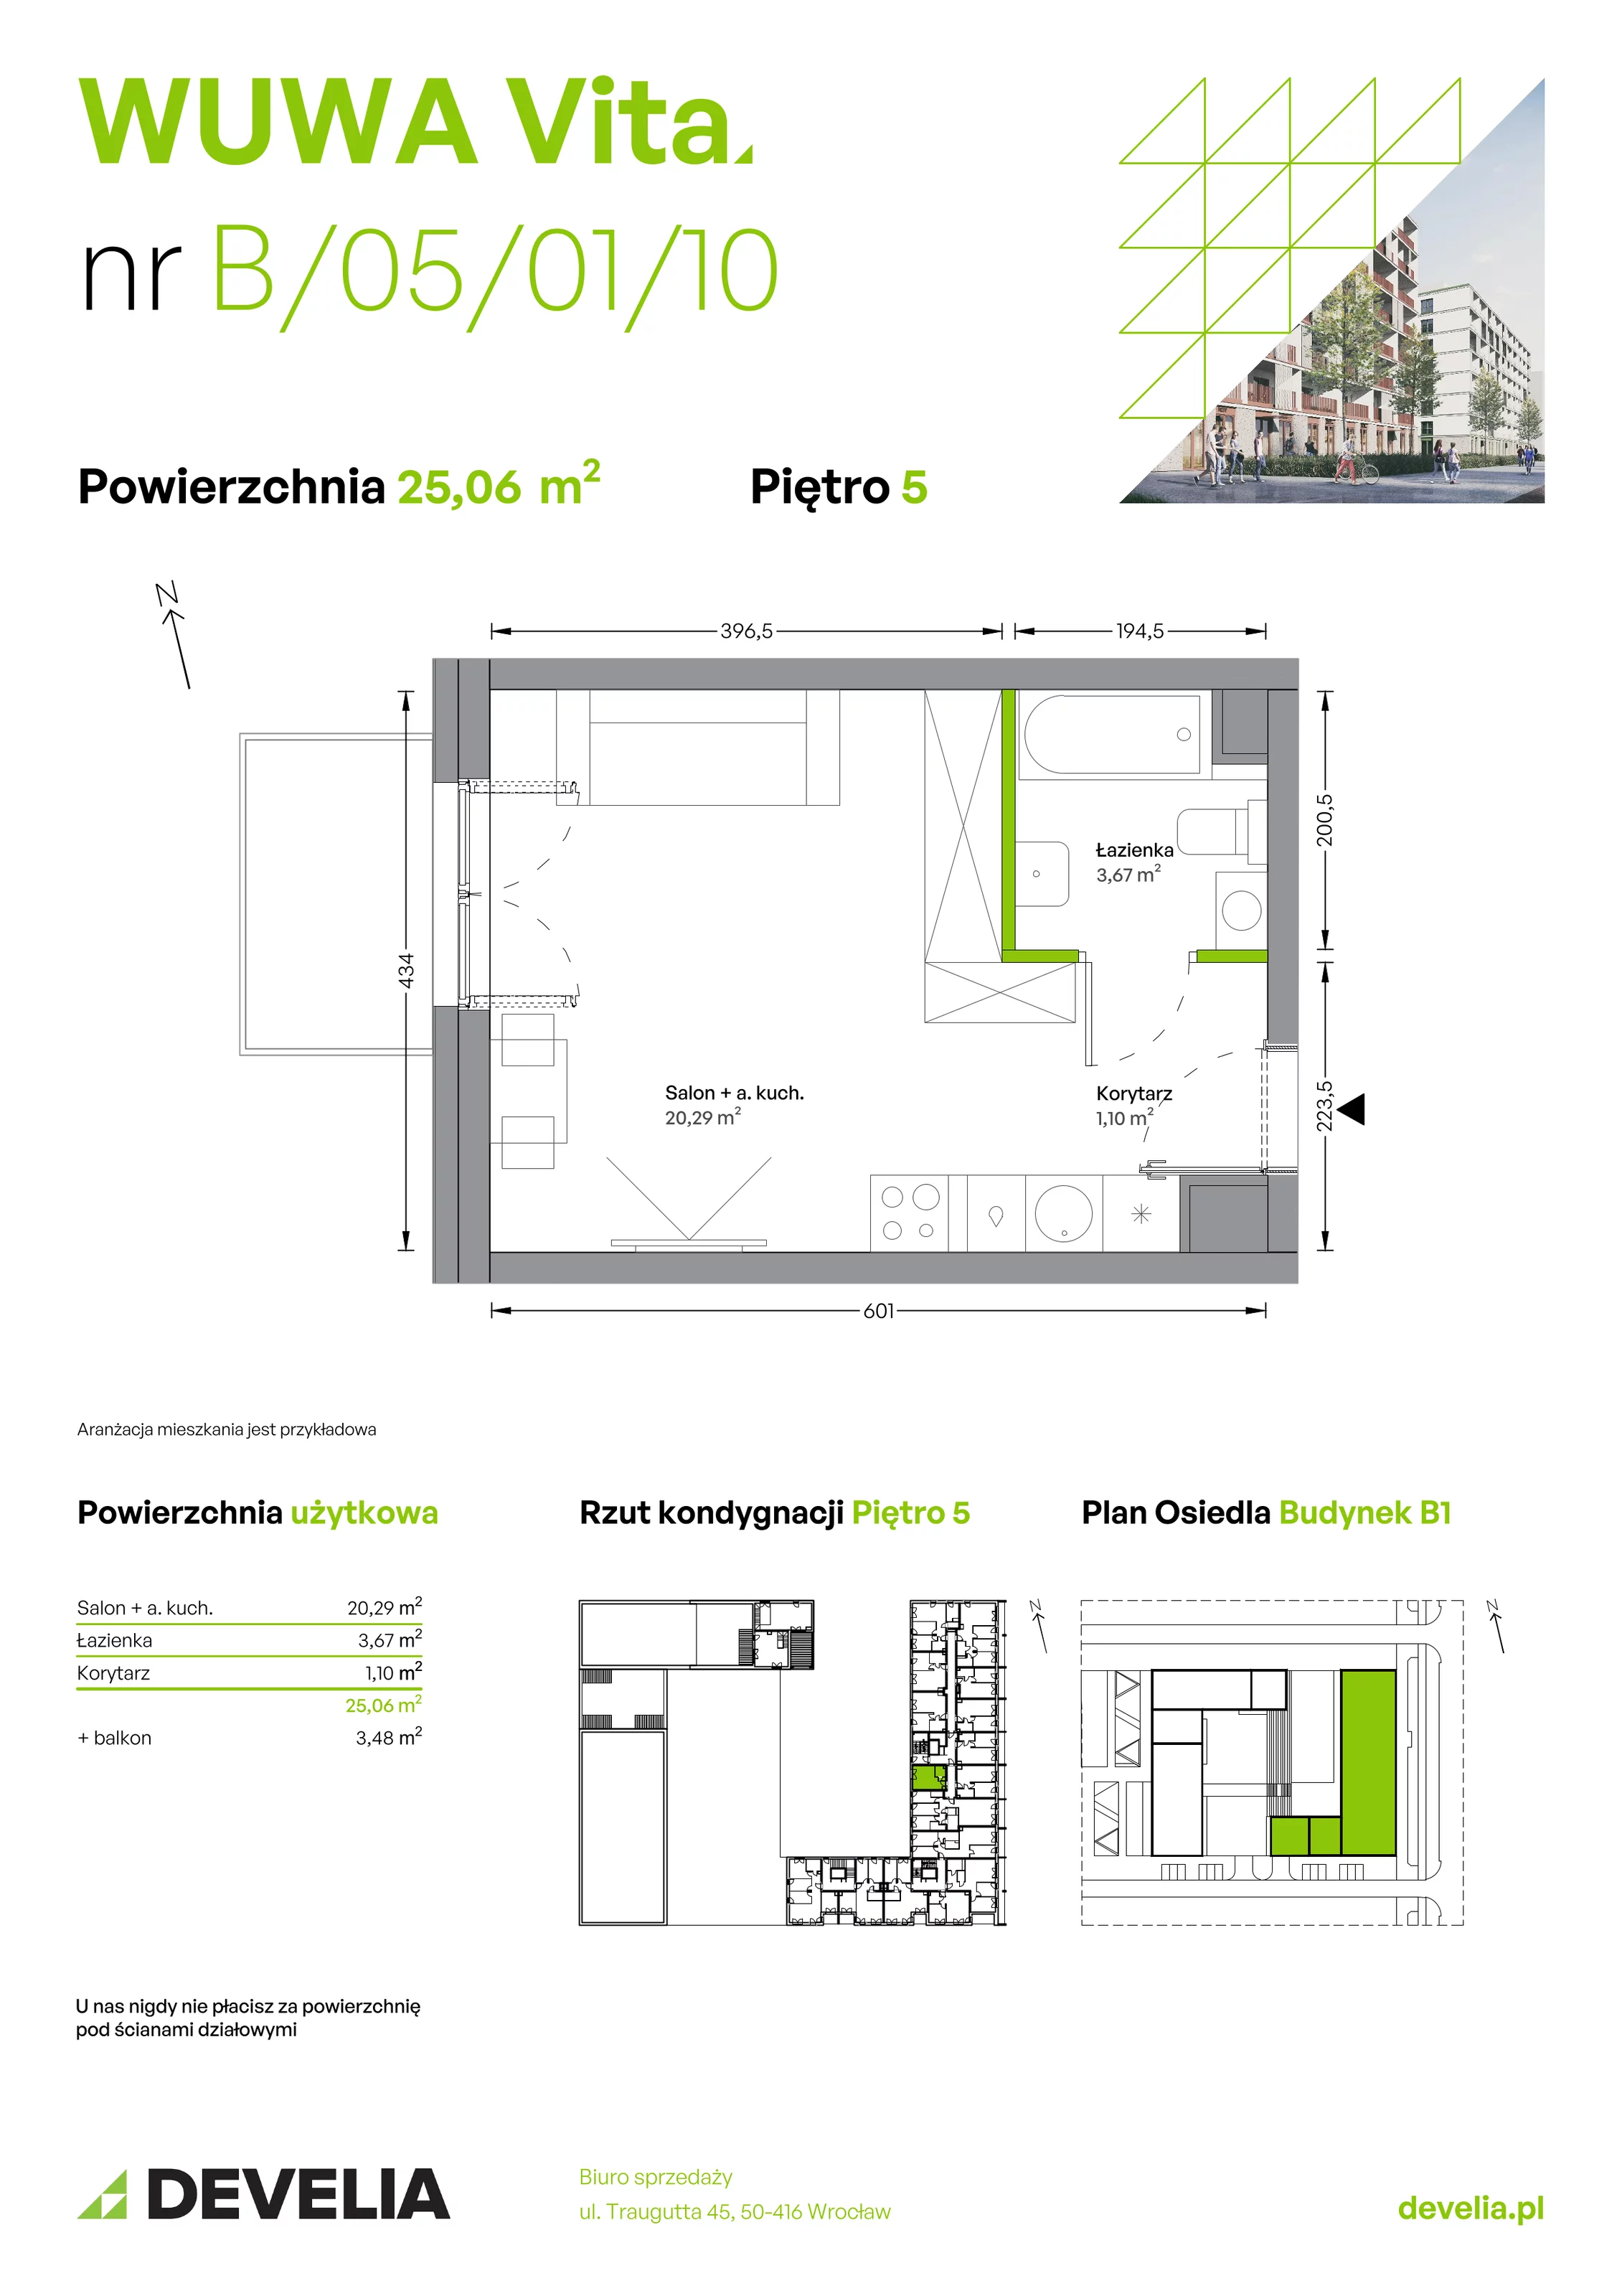 Mieszkanie 25,06 m², piętro 5, oferta nr B.05.01.10, WUWA Vita, Wrocław, Żerniki, Fabryczna, ul. Tadeusza Brzozy